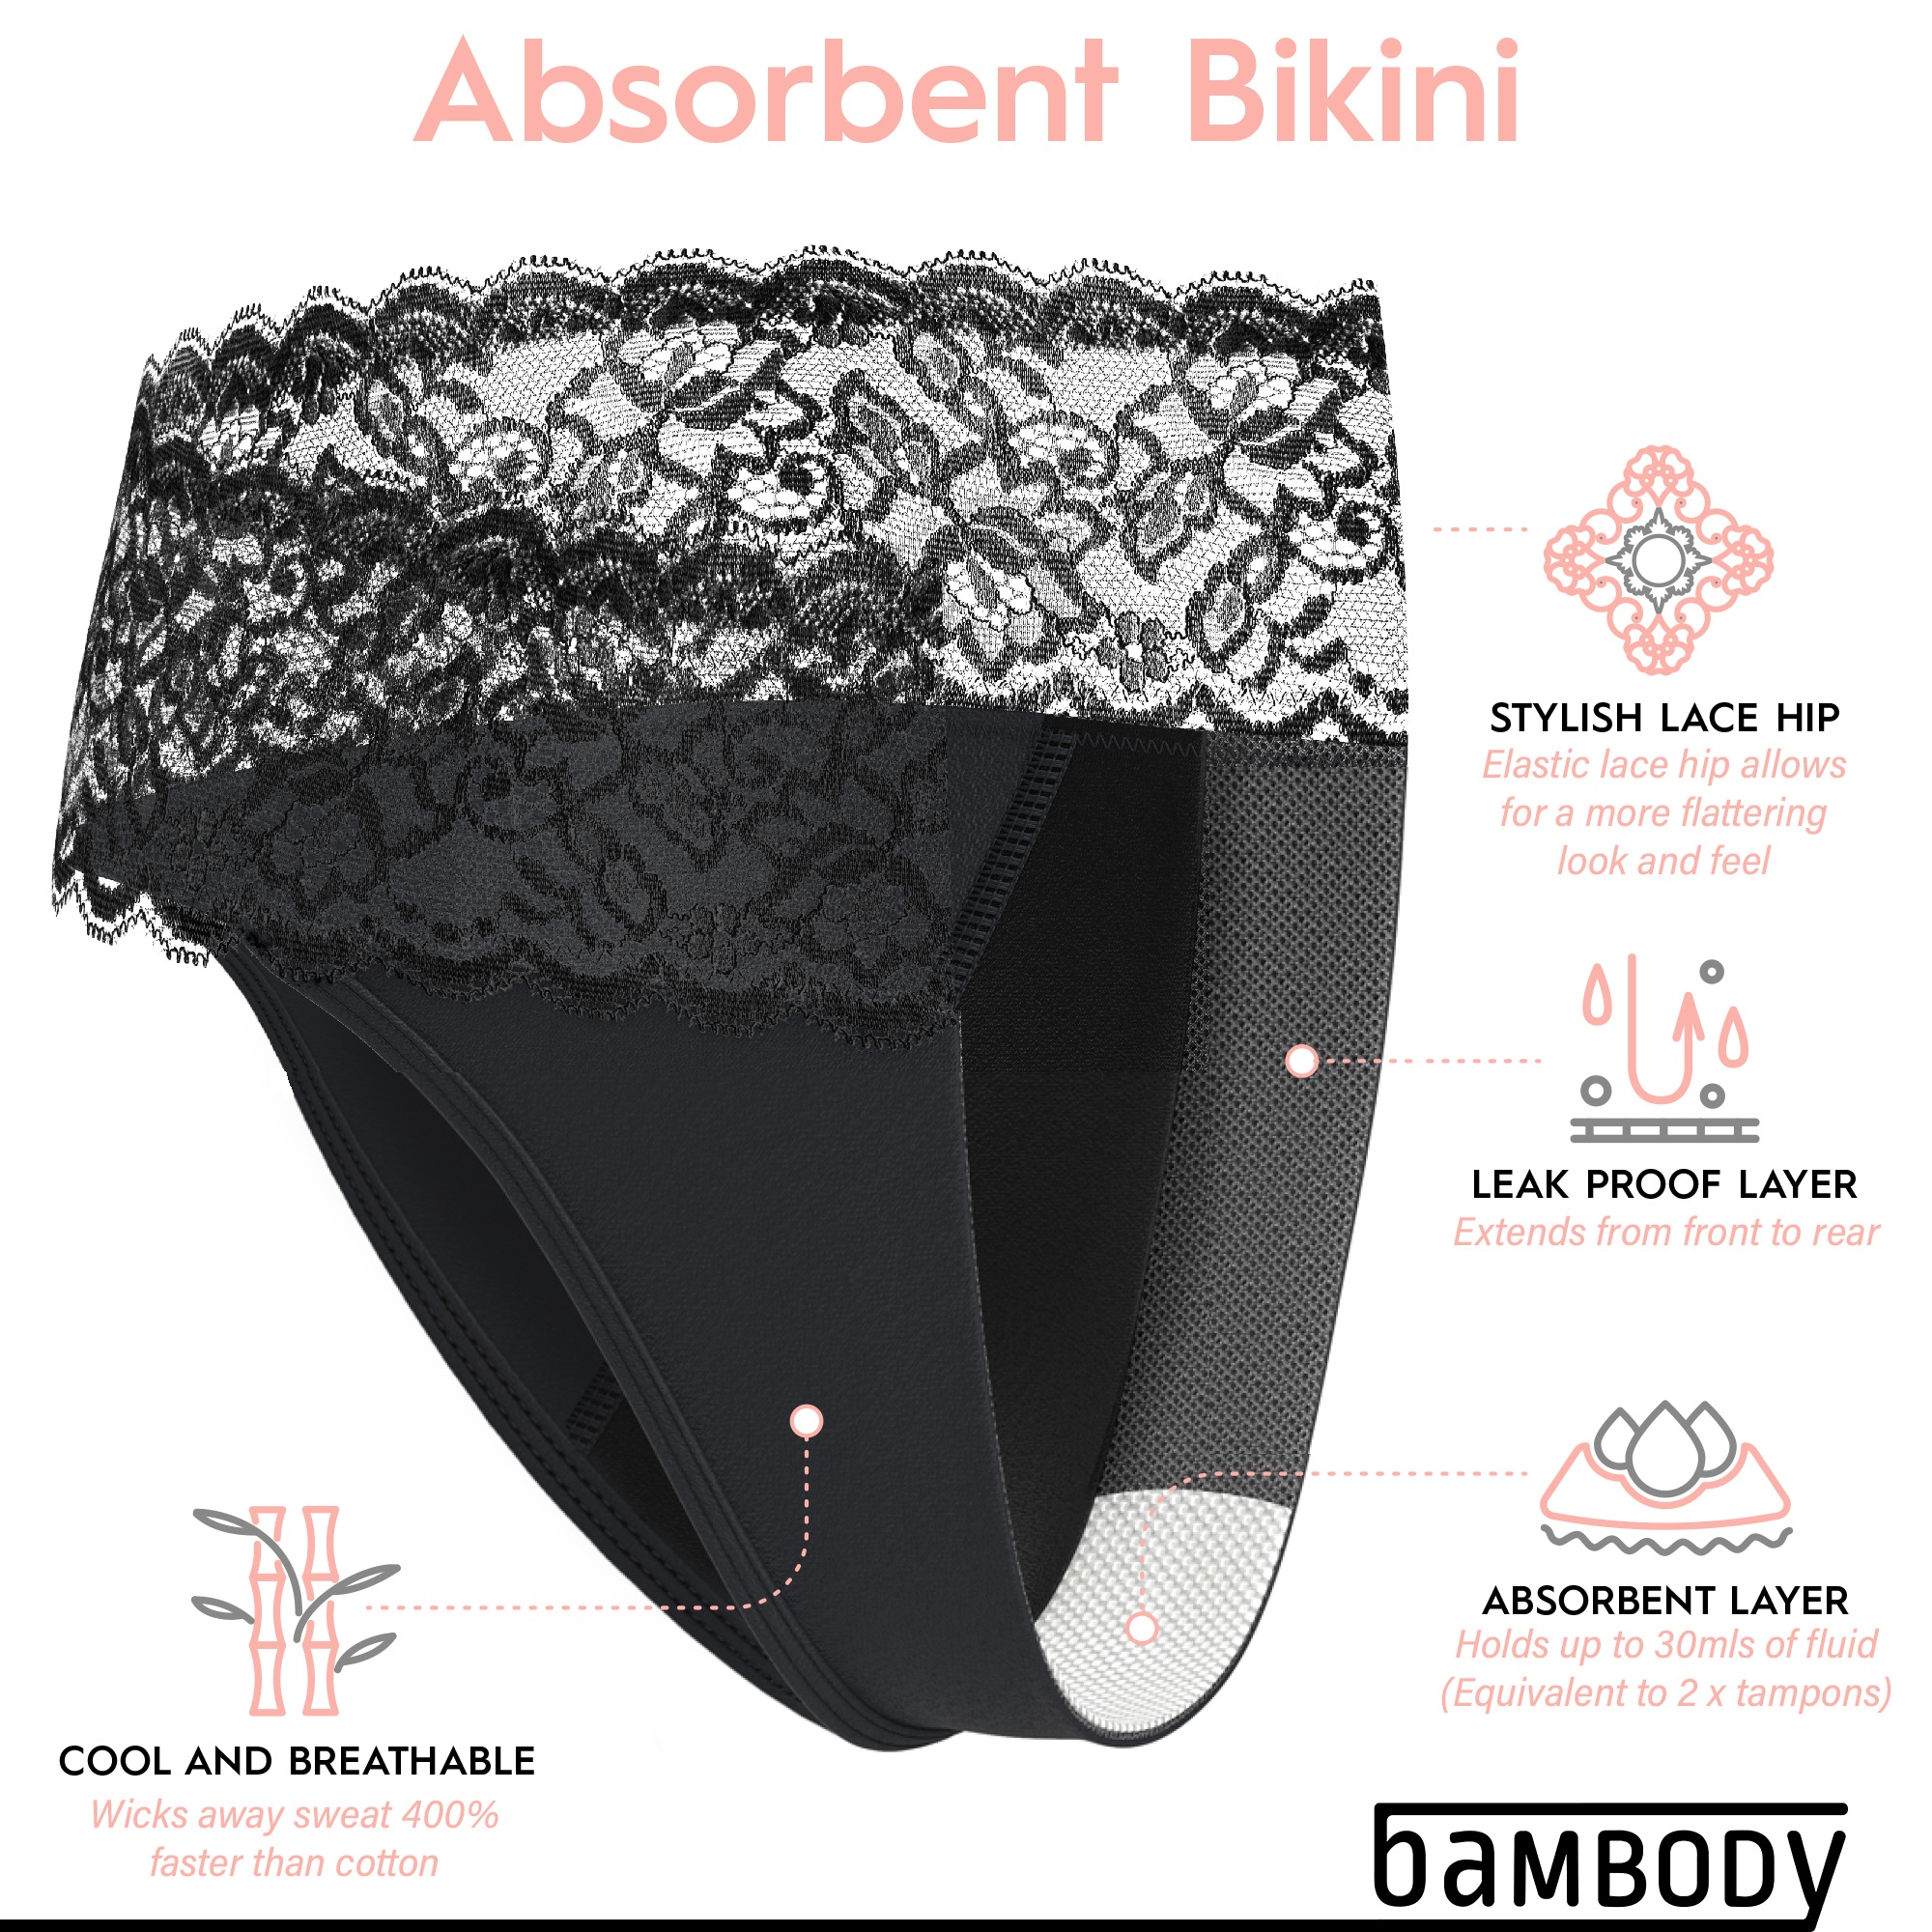 Absorbent Bikini - Bambody